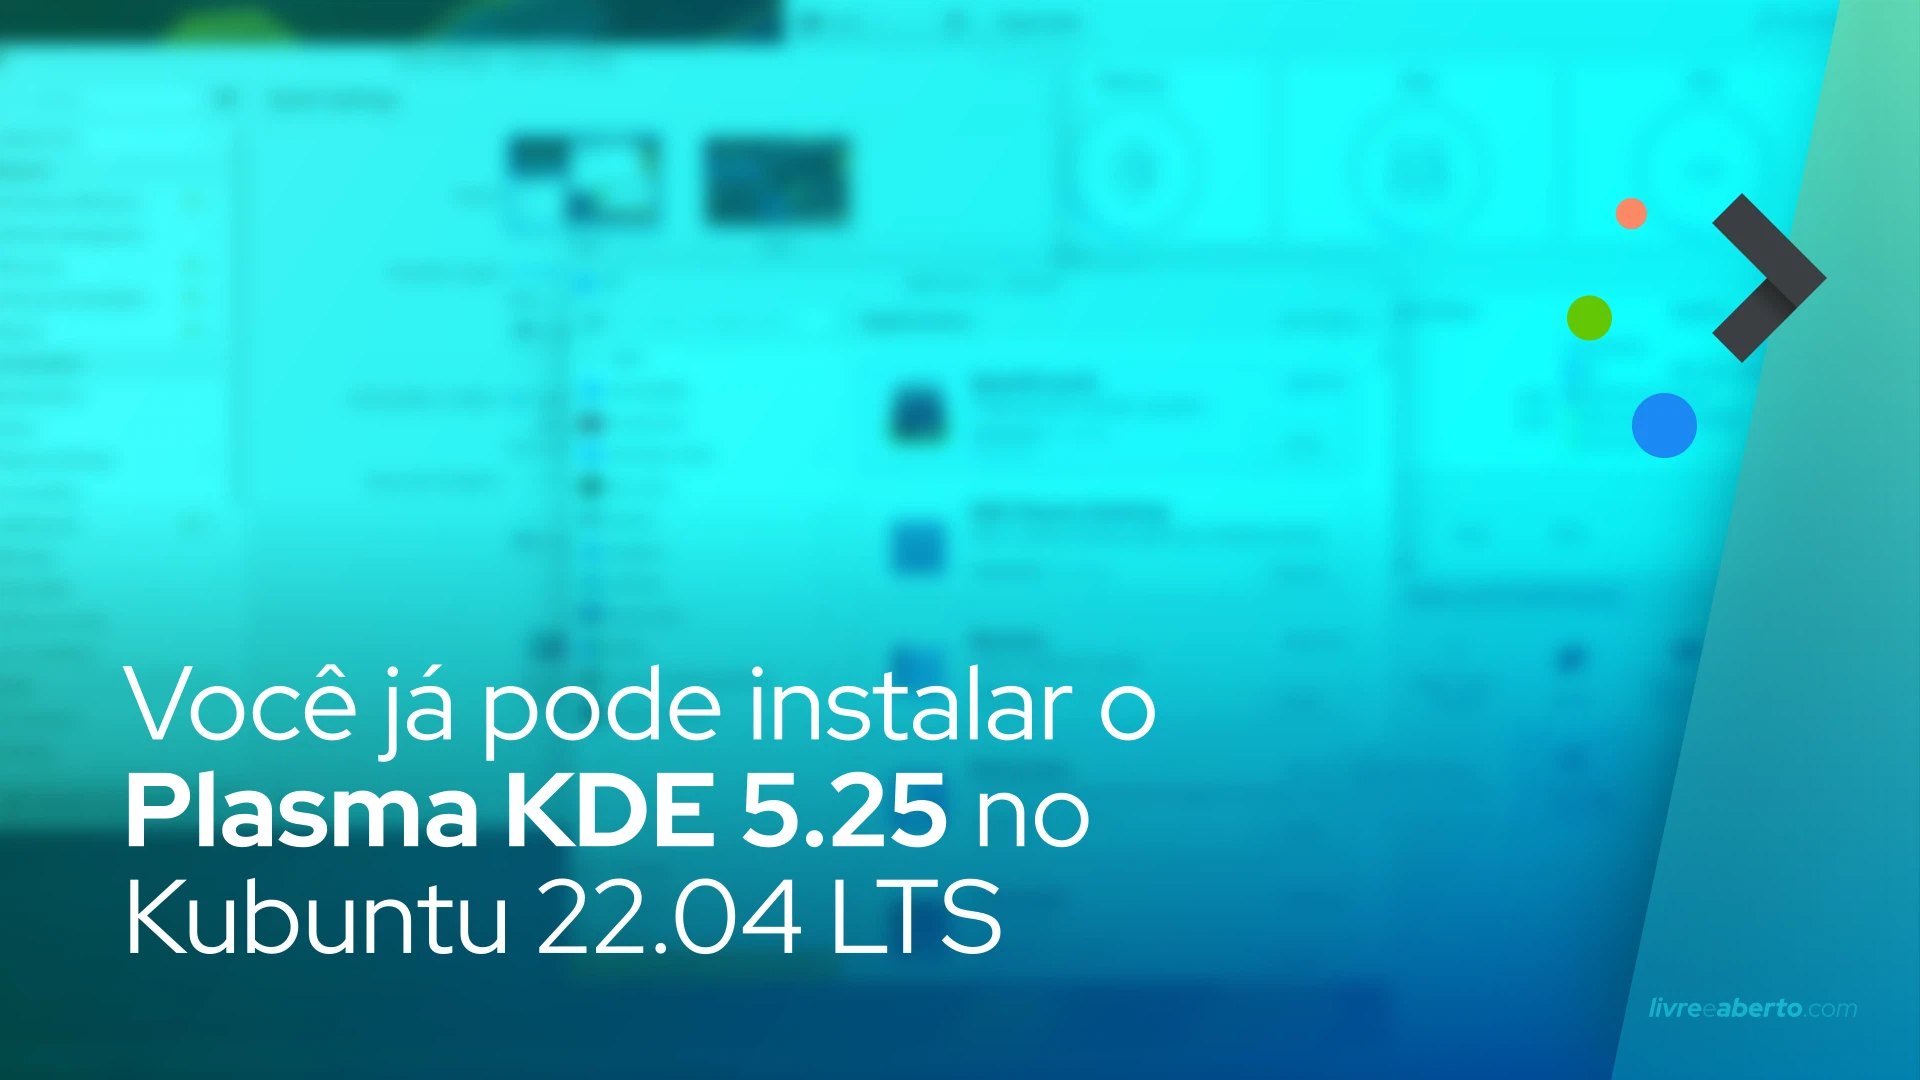 Você já pode instalar o Plasma KDE 5.25 no Kubuntu 22.04 LTS, veja como